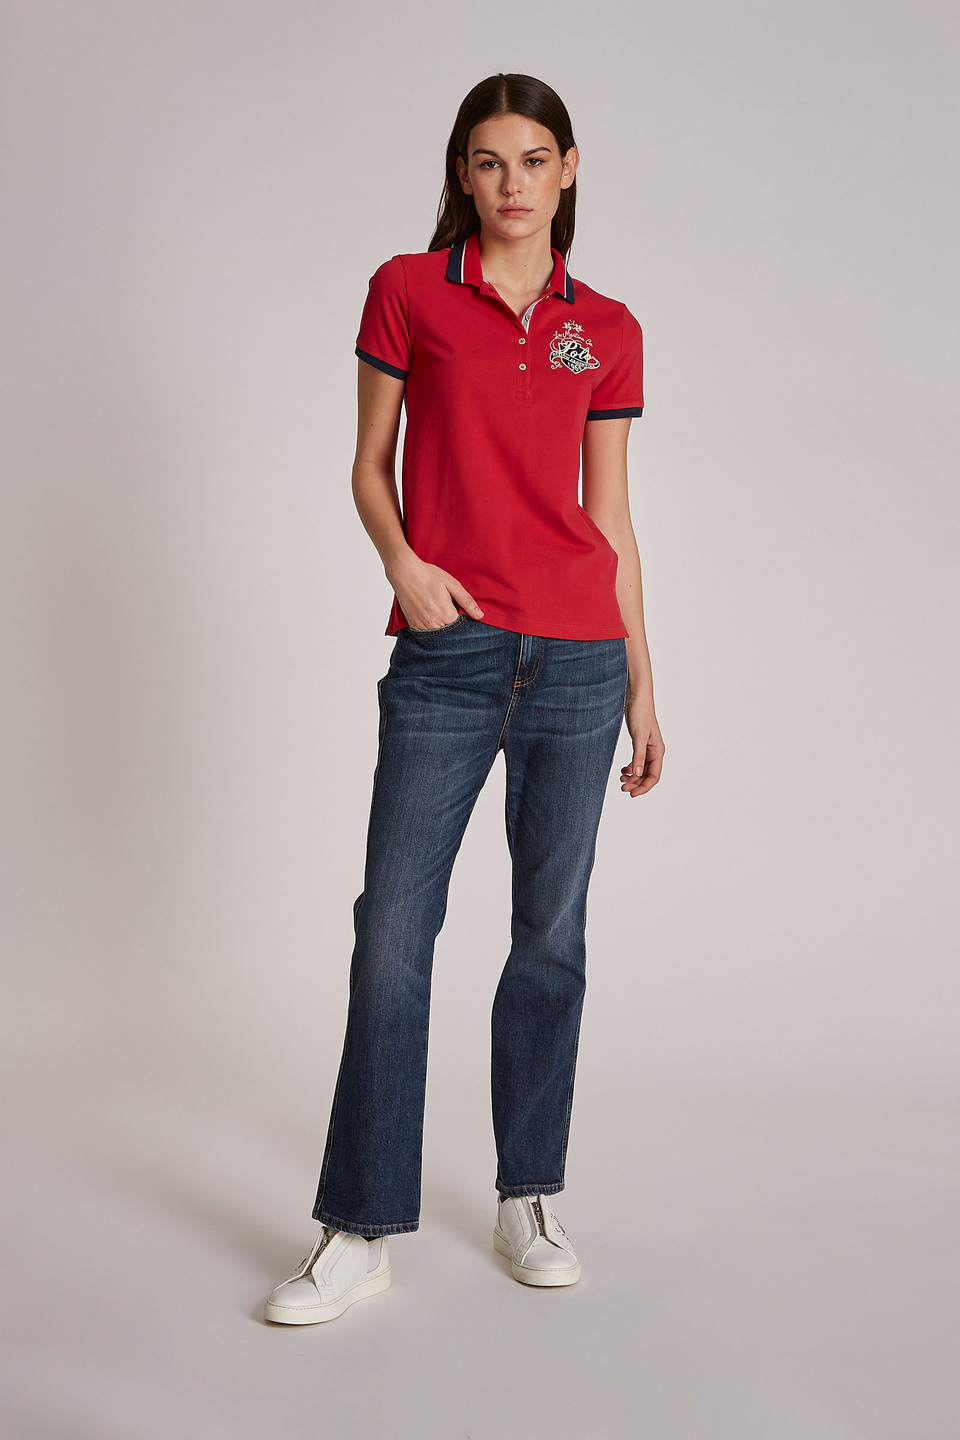 Polo femme 100% coton à manches courtes et coupe classique | La Martina - Official Online Shop